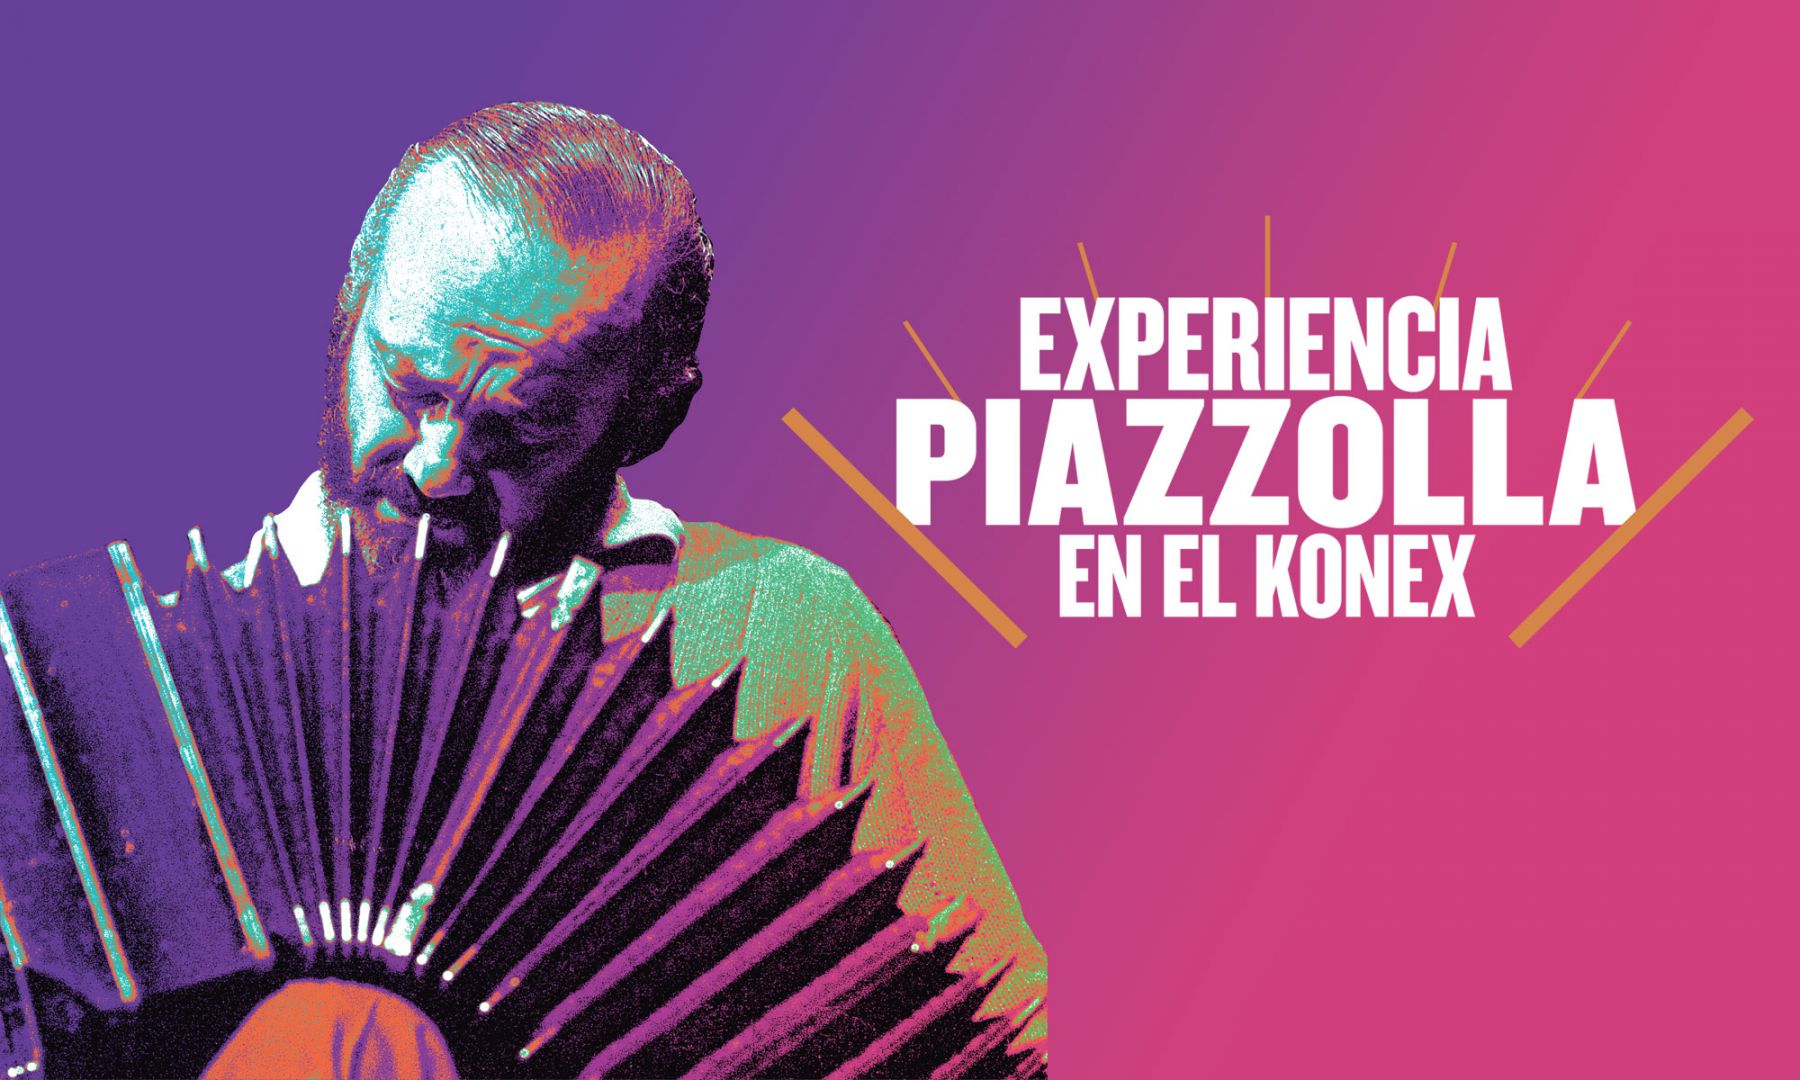 Experiencia Piazzolla en el Konex